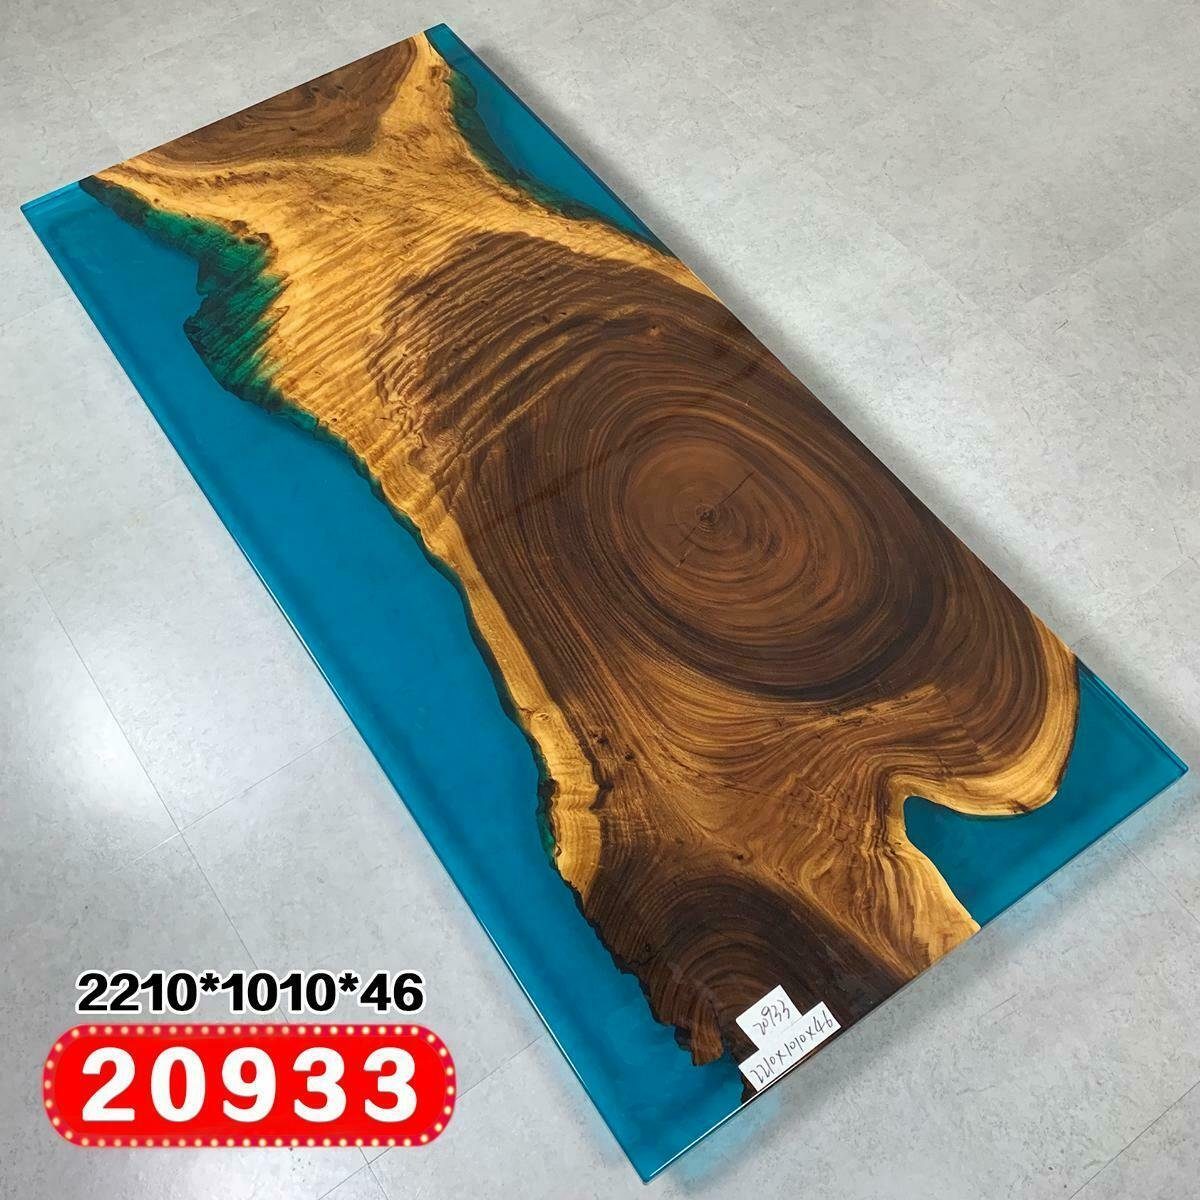 JVmoebel Esstisch, River Table Esstisch Massiv Tische 221 x 101 Flusstisch Epoxidharz